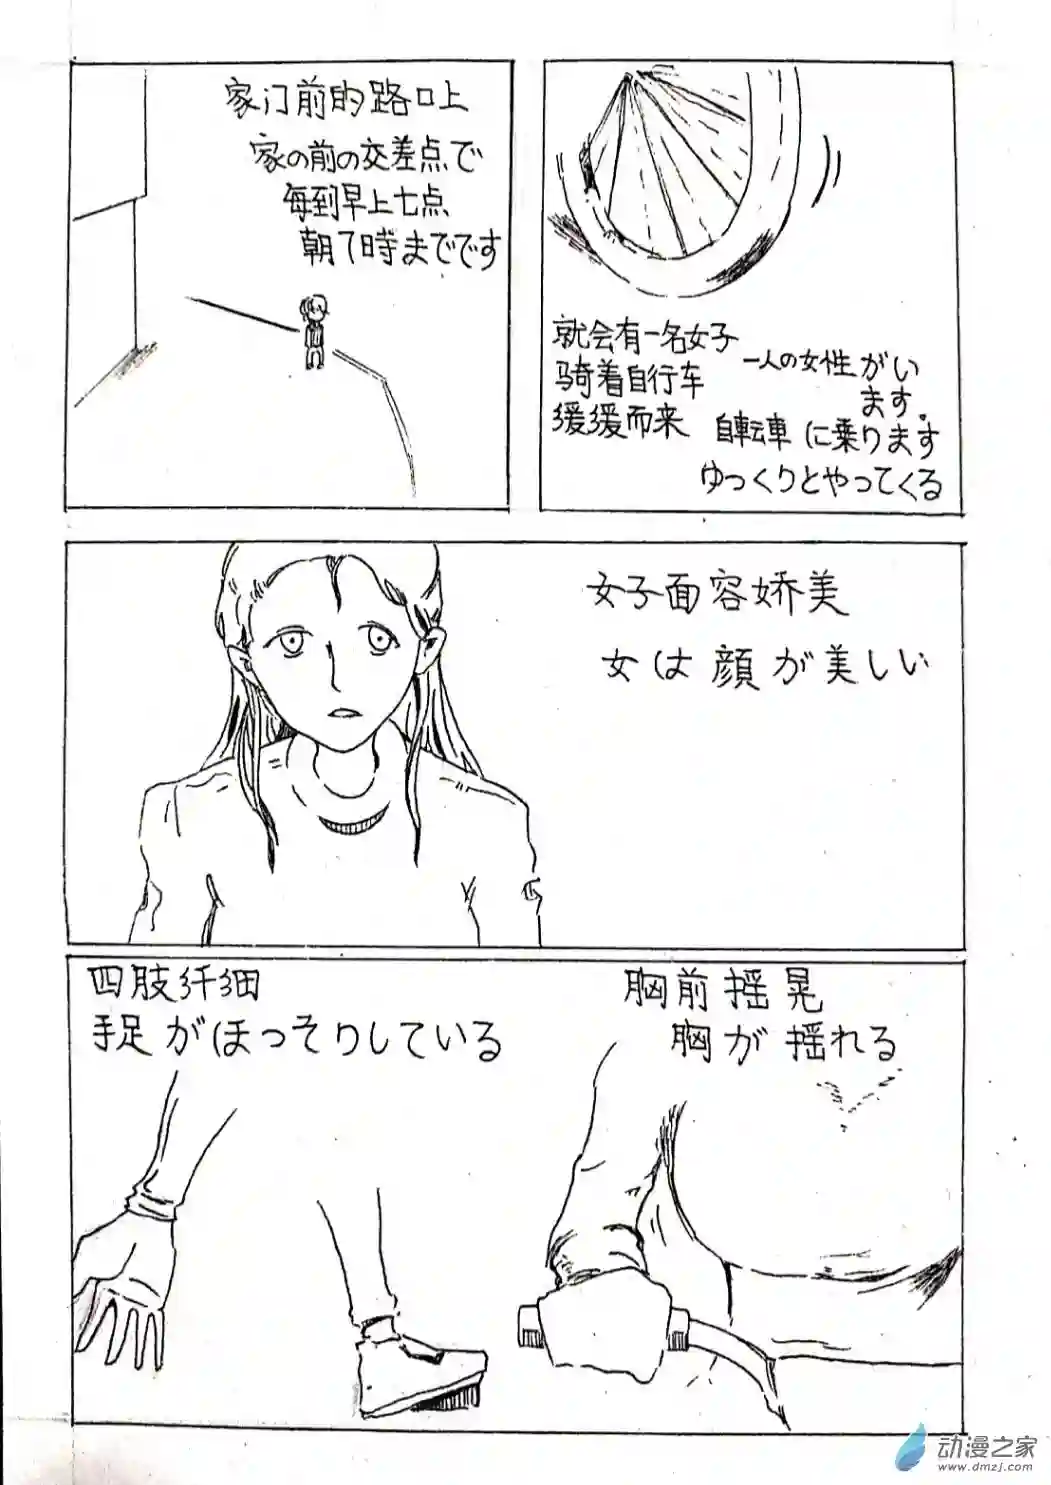 日刊漫画07 少年赏妹篇四